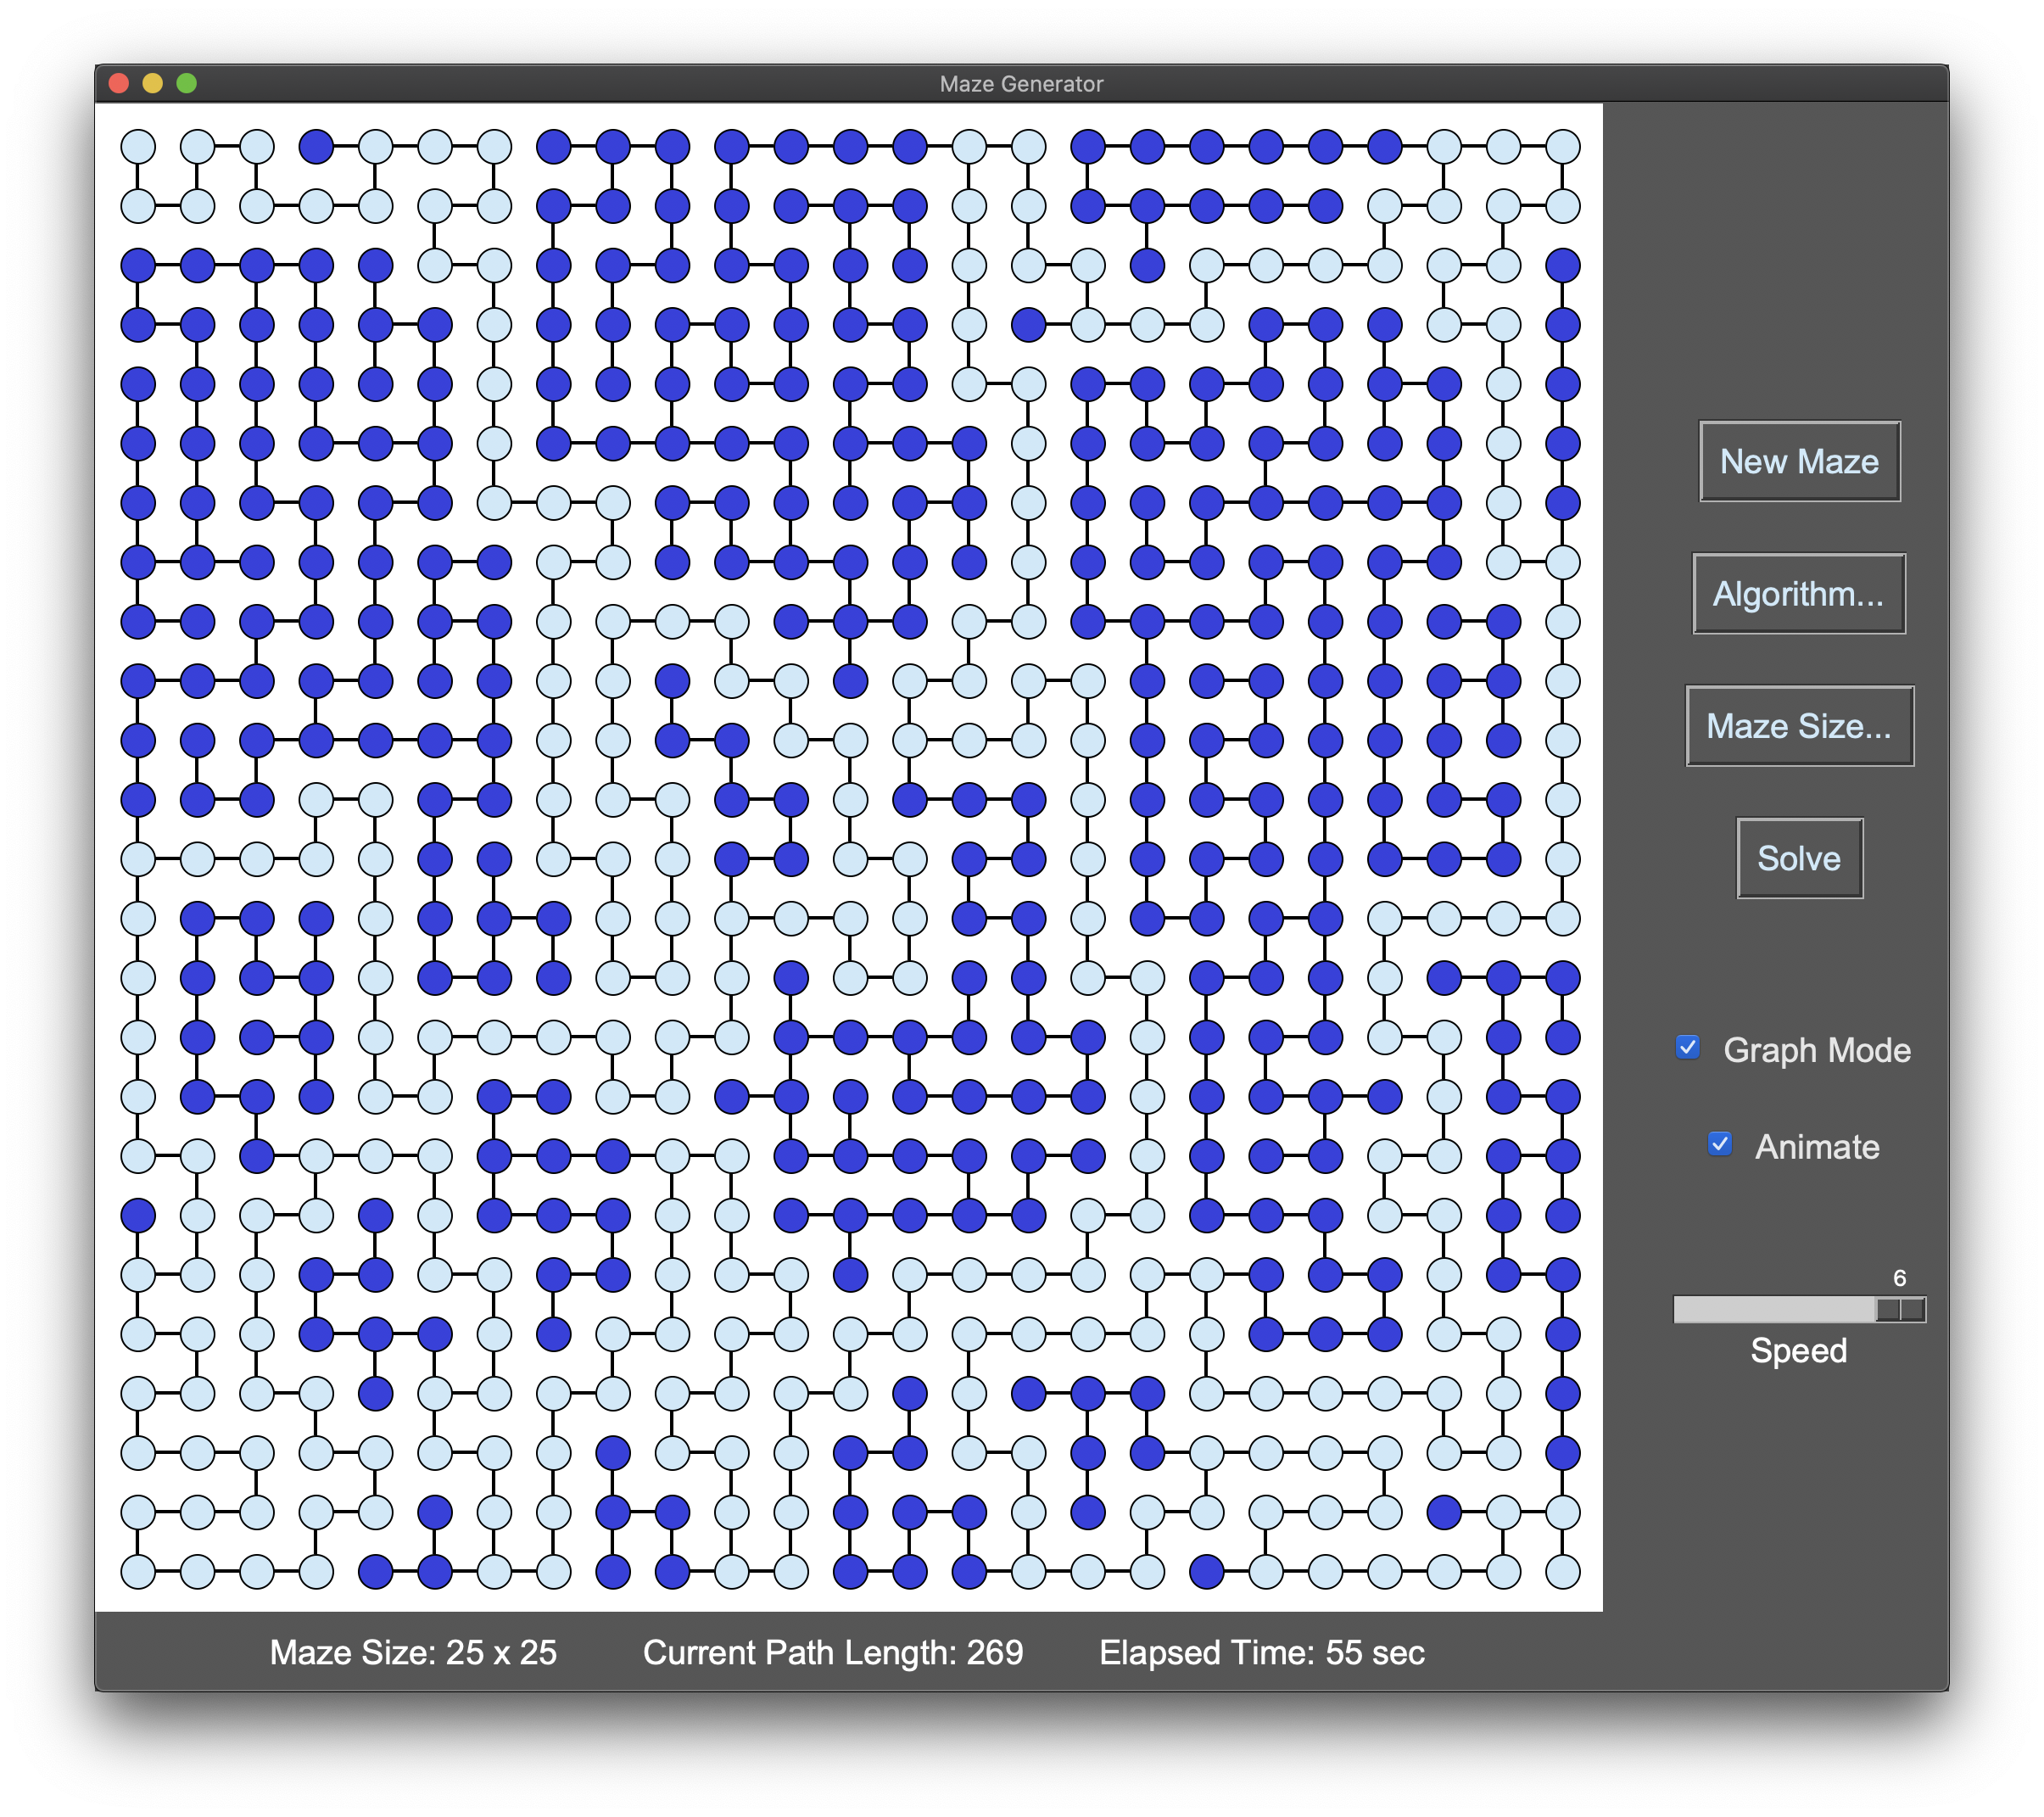 Maze UI - Graph Mode (solved)